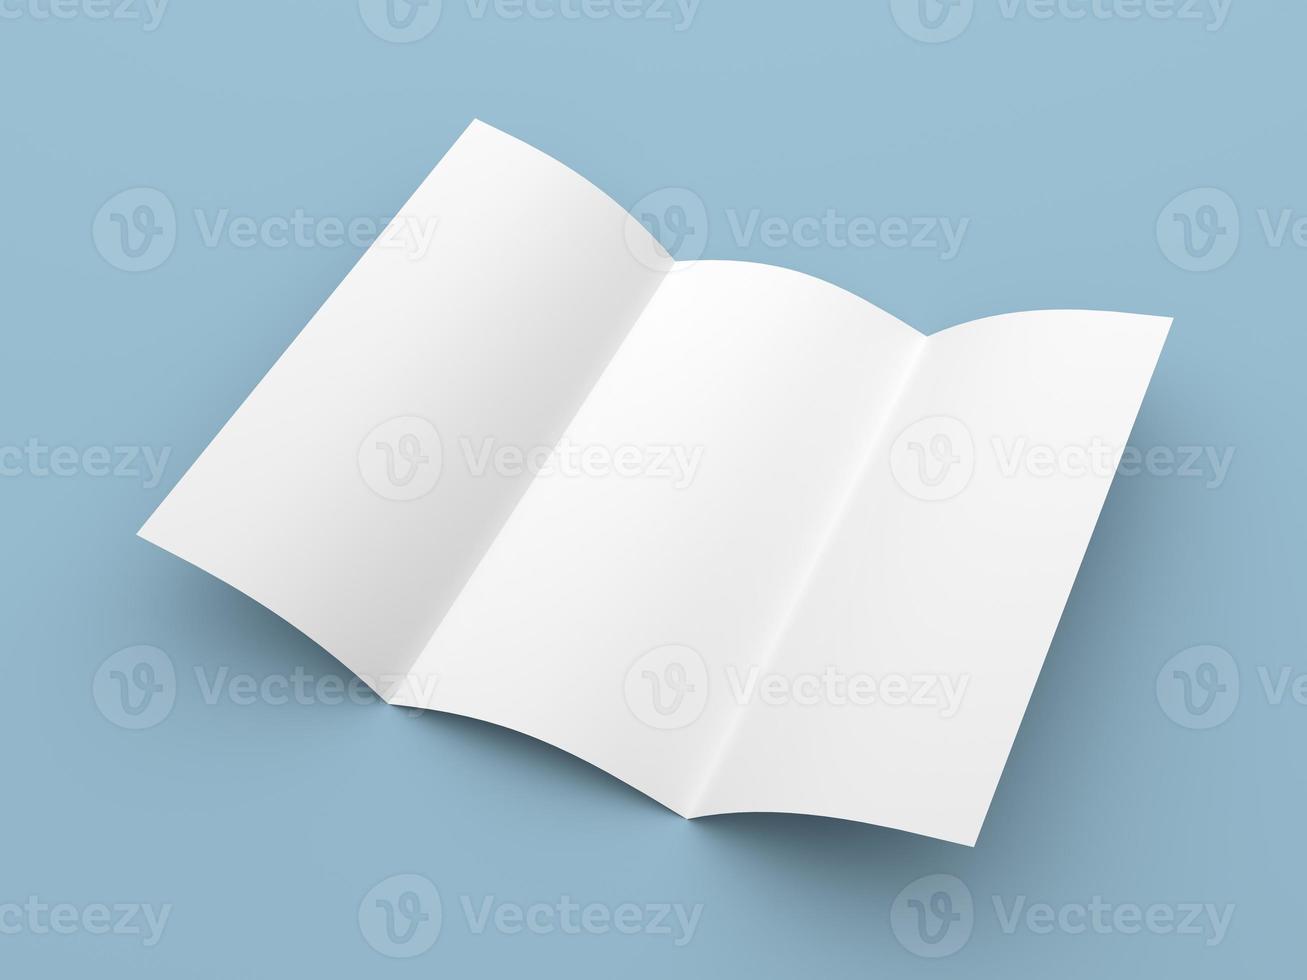 Broschüre leere dreifach gefaltete weiße Papierbroschüre foto